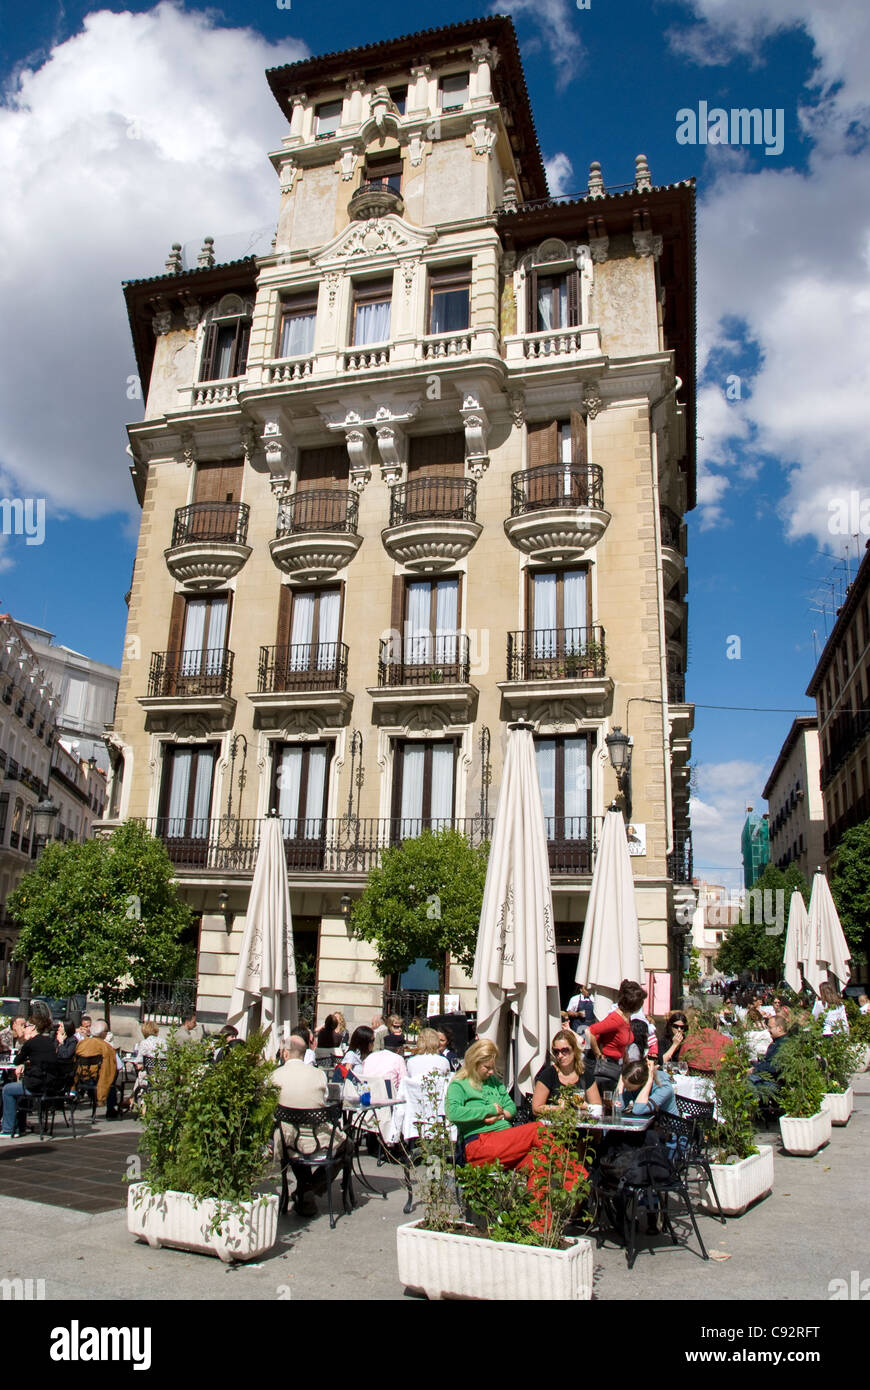 Menschen, die vor Café, Madrid, Spanien, Europa sitzen Stockfoto